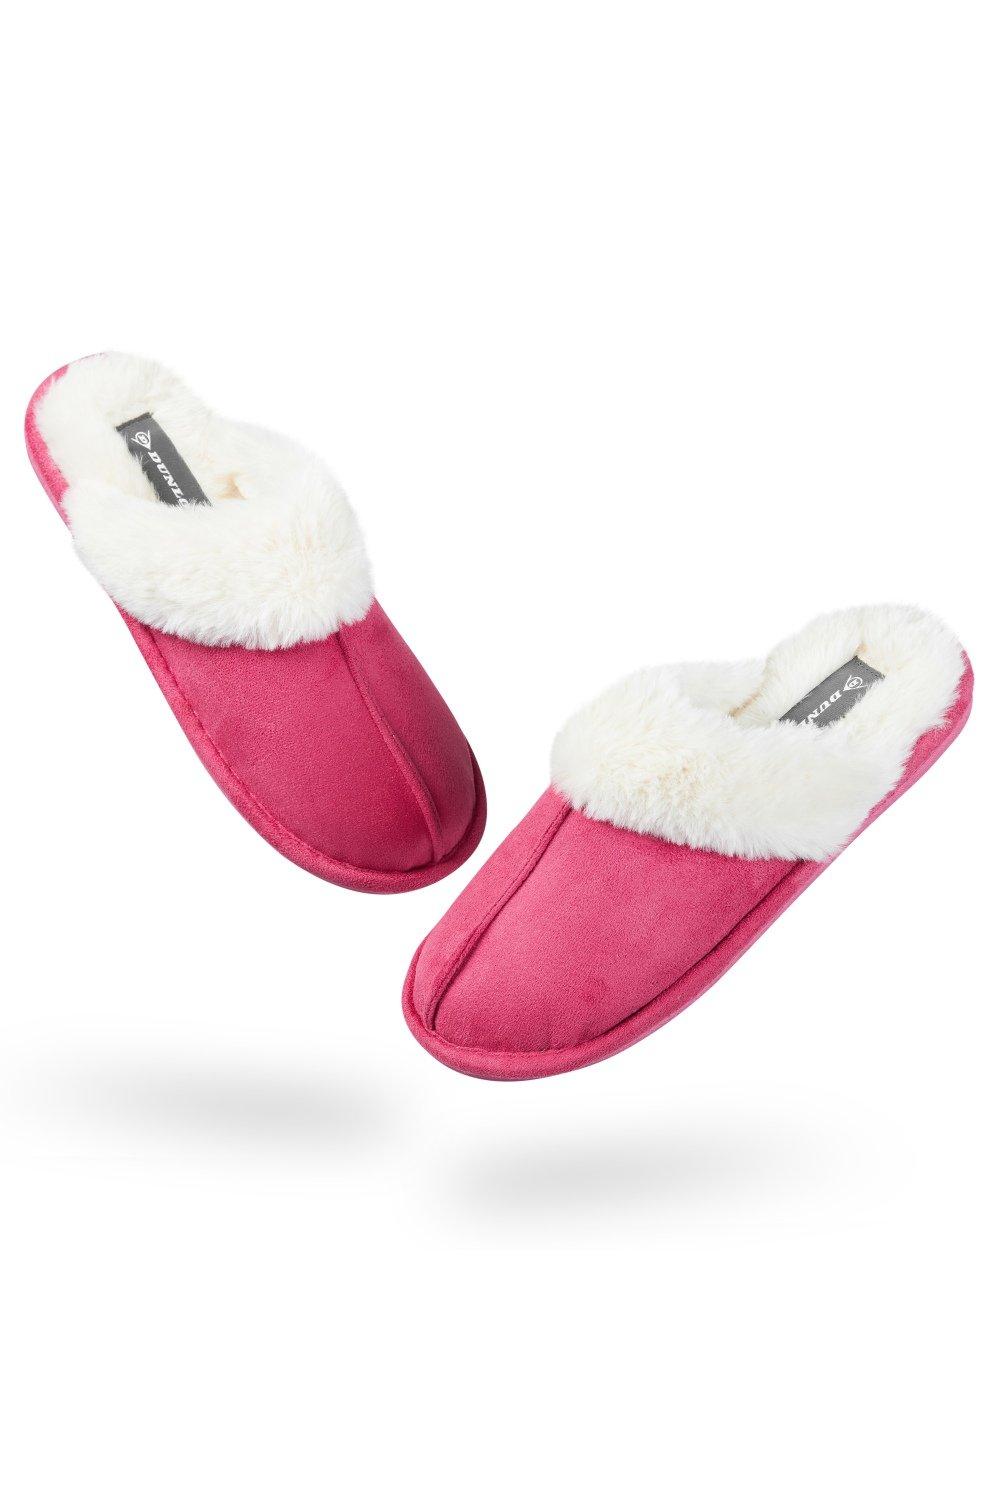 Домашние пушистые тапочки на толстой меховой подкладке Dunlop, розовый bebealy suede fur plush slippers for women winter fuzzy soft collar fur lining fluffy slippers indoor furry house slippers women